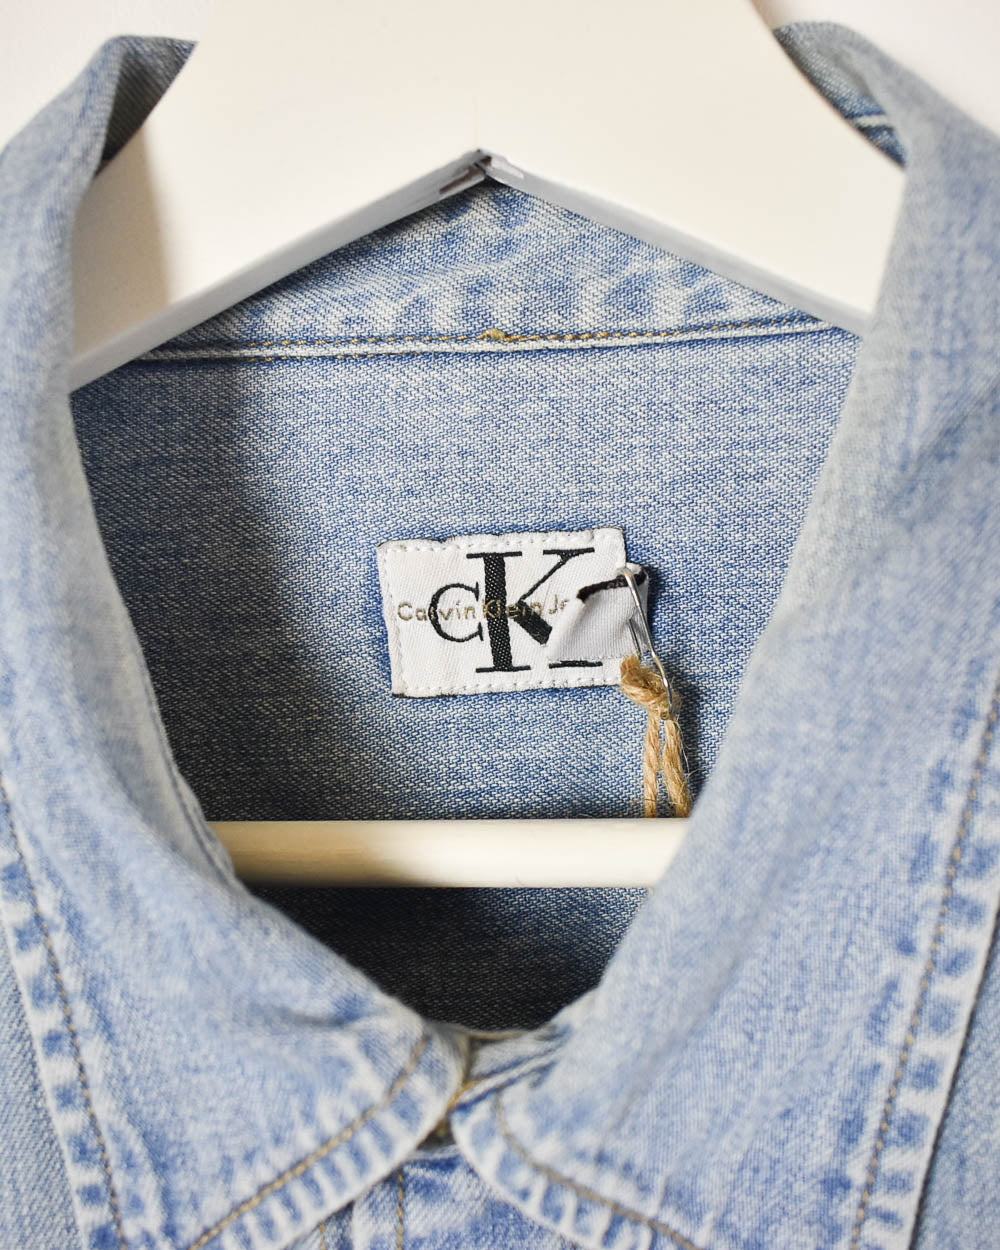 Baby Calvin Klein Jeans Denim Shirt - XX-Large